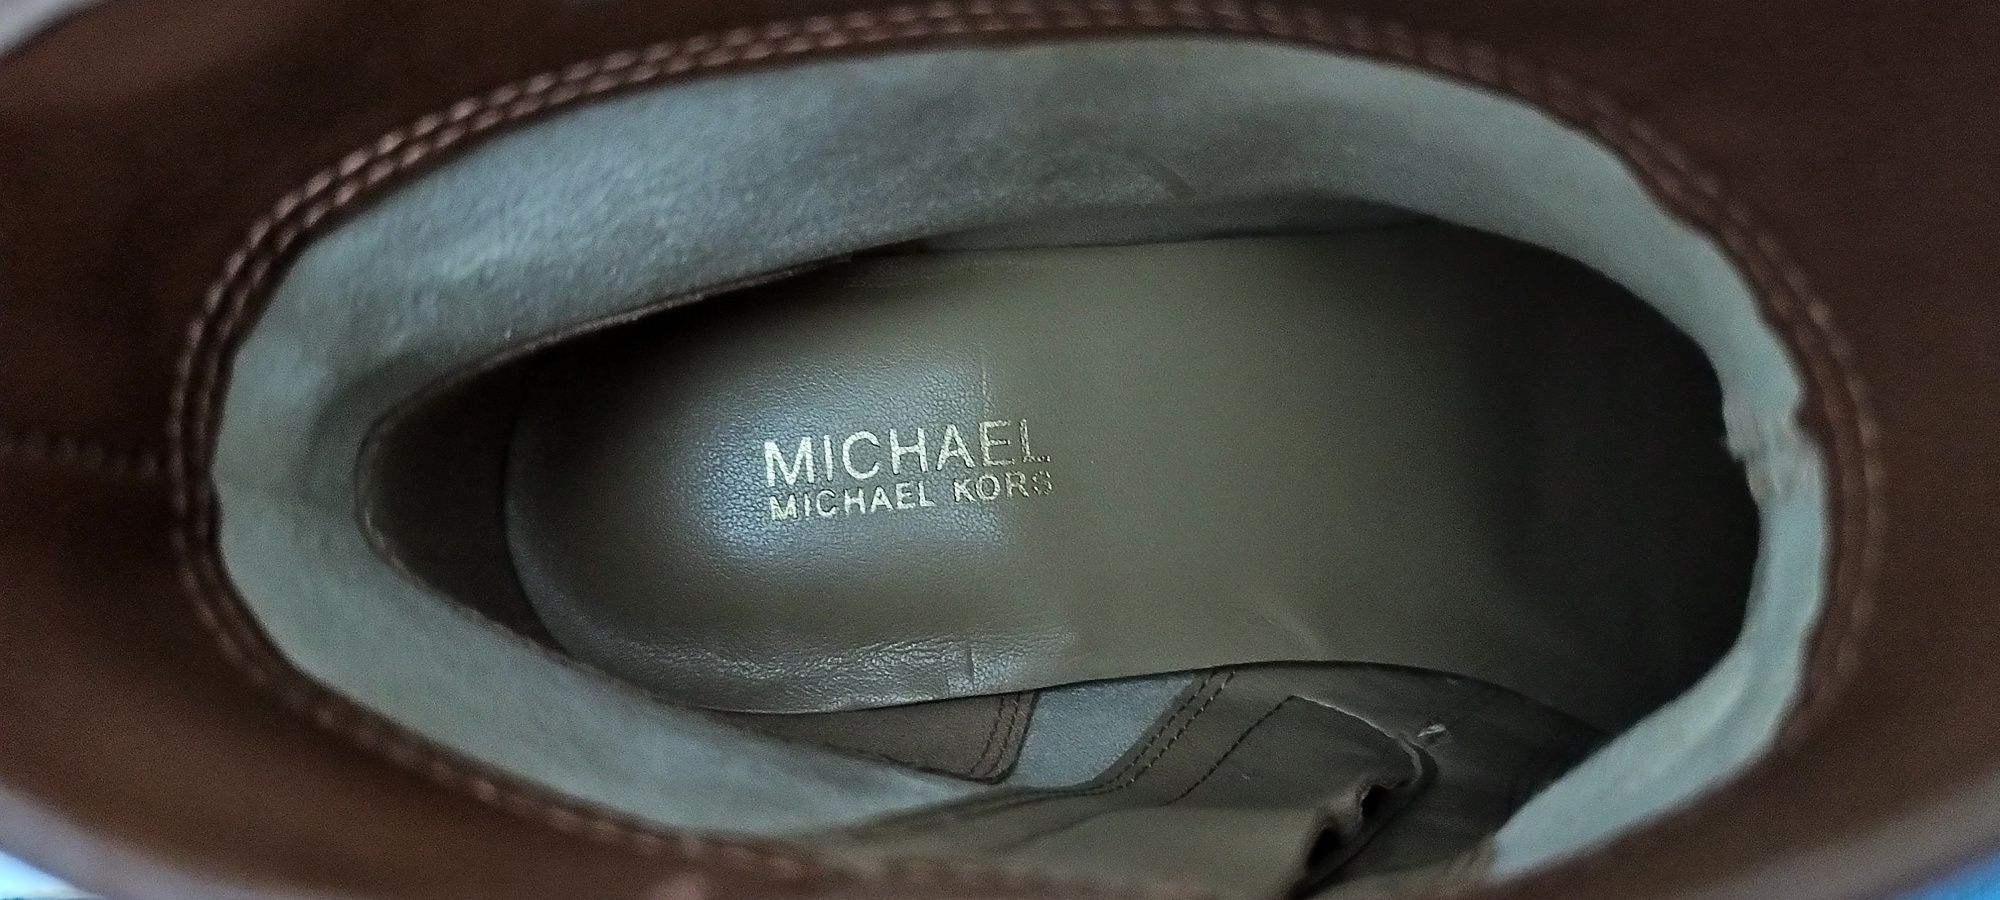 Michael Kors, botas pelo tornozelo